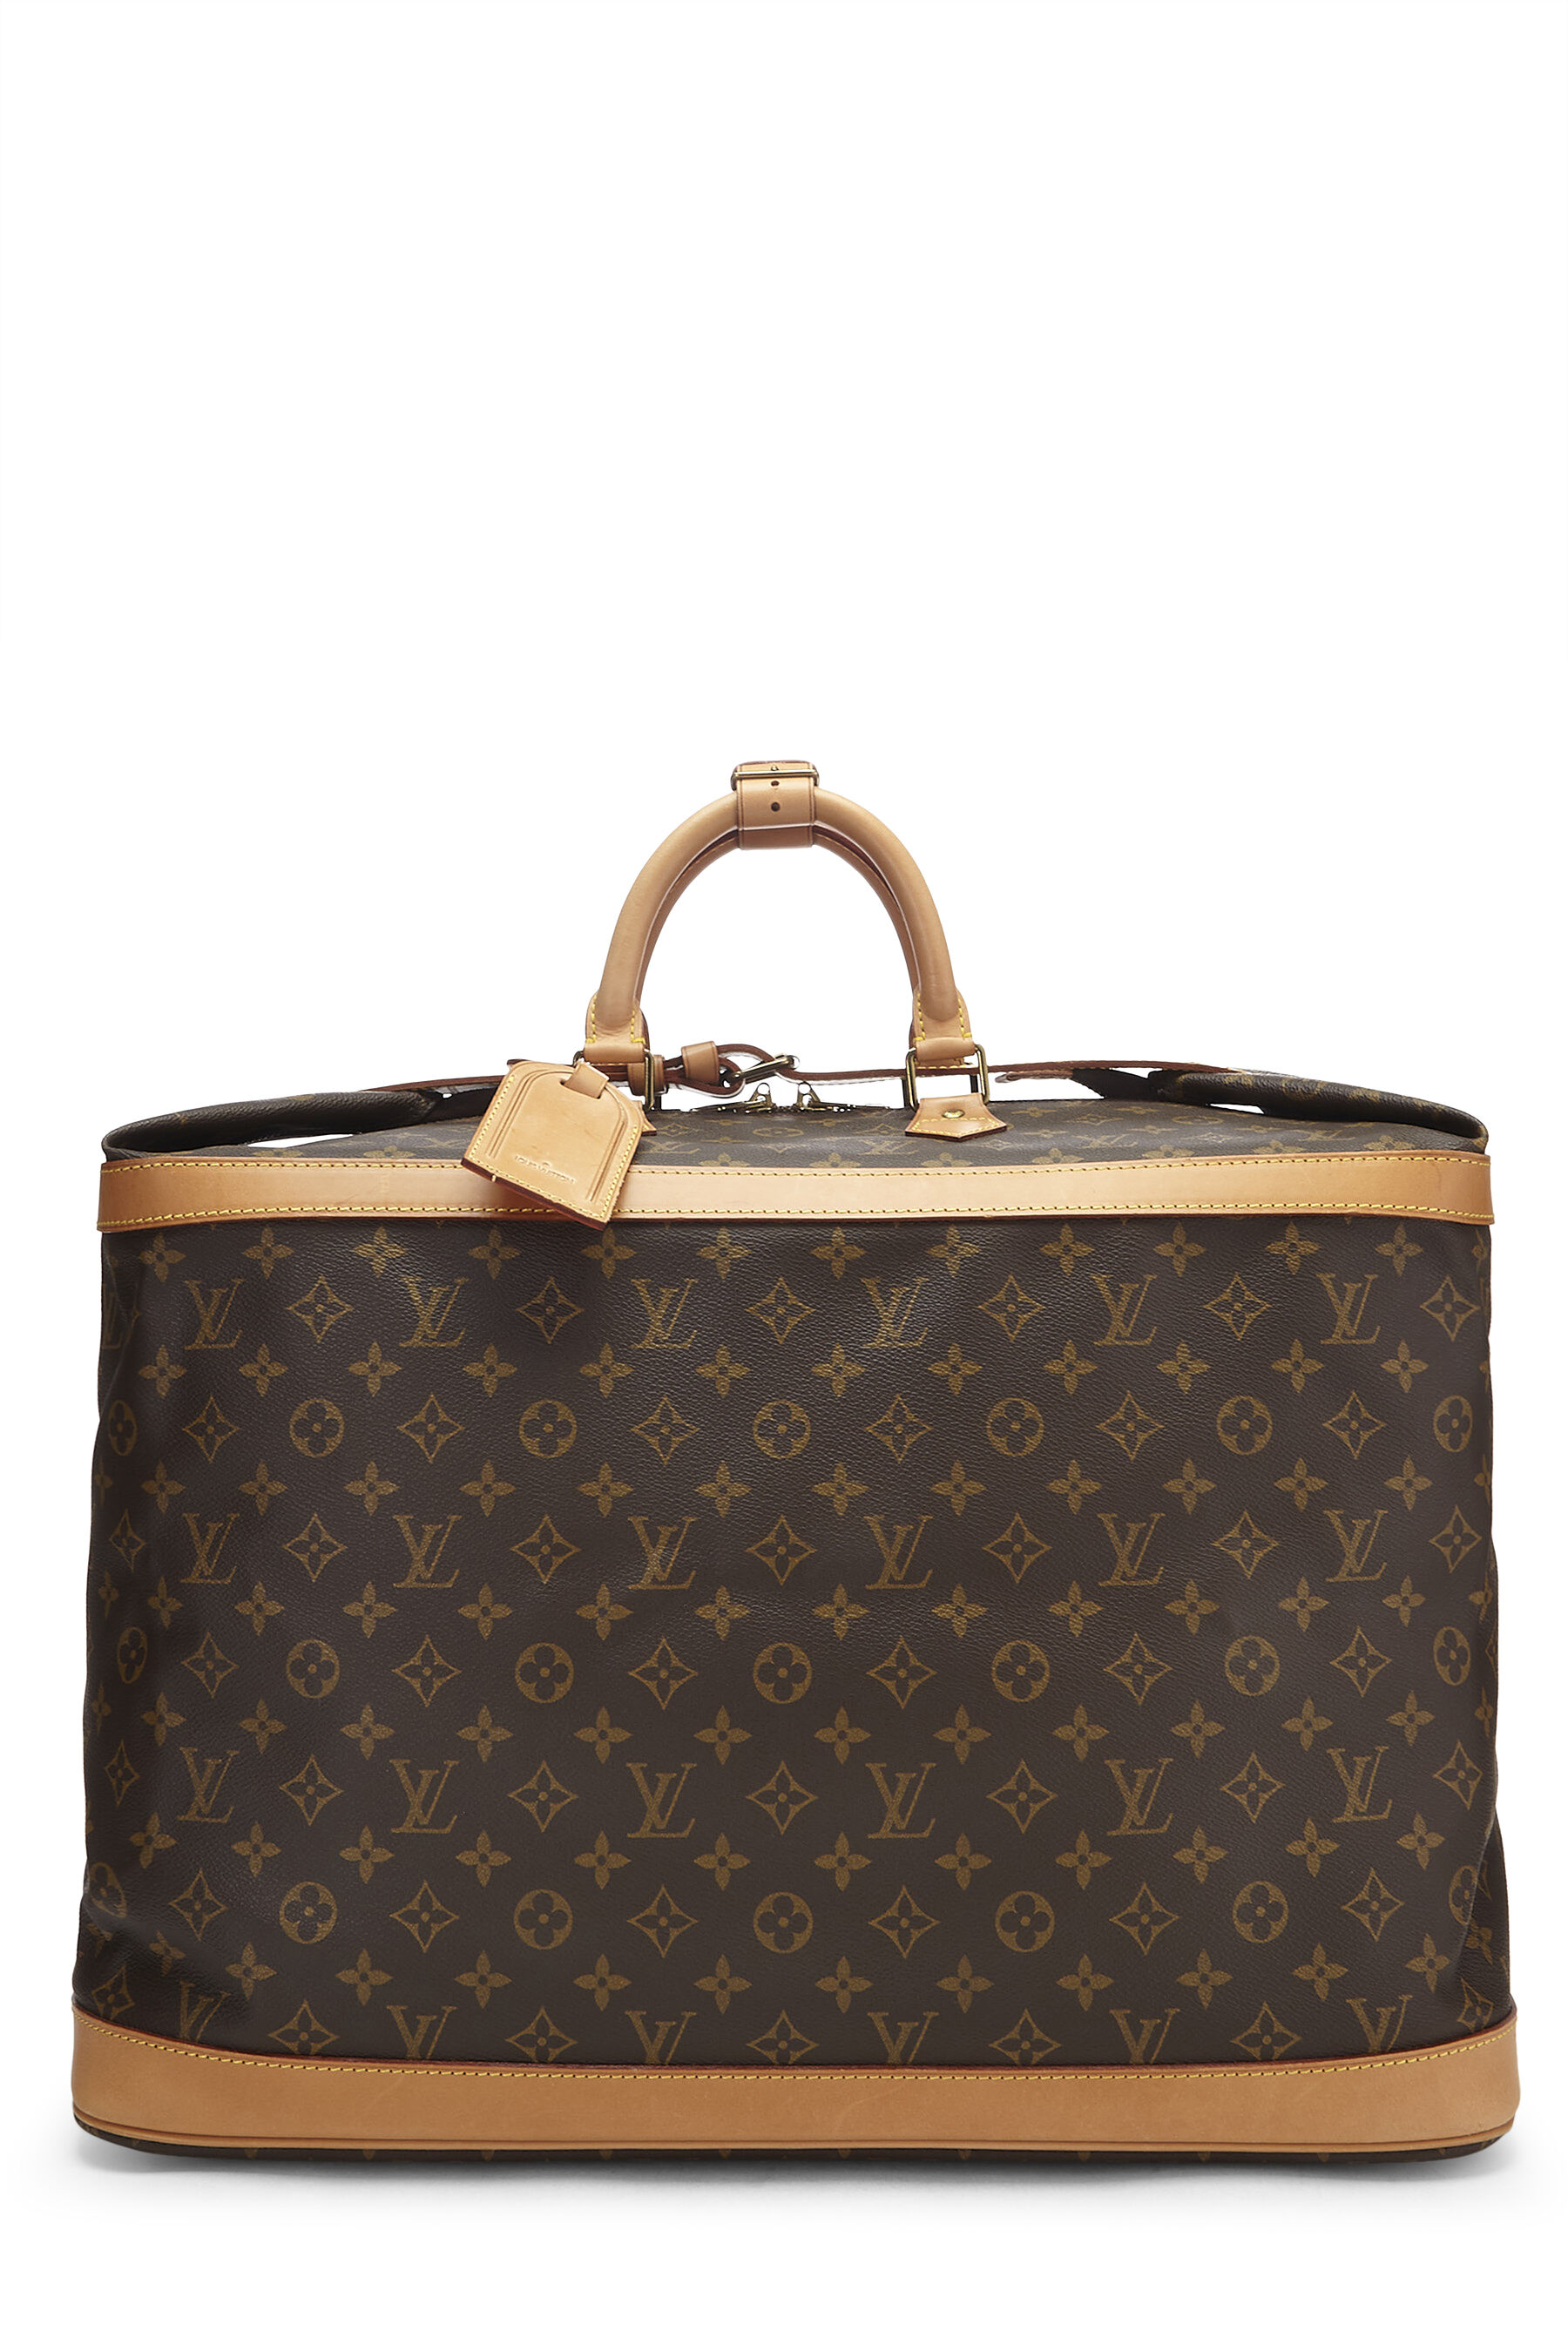 Louis Vuitton Monogram Cruiser Bag 50 Boston Bag